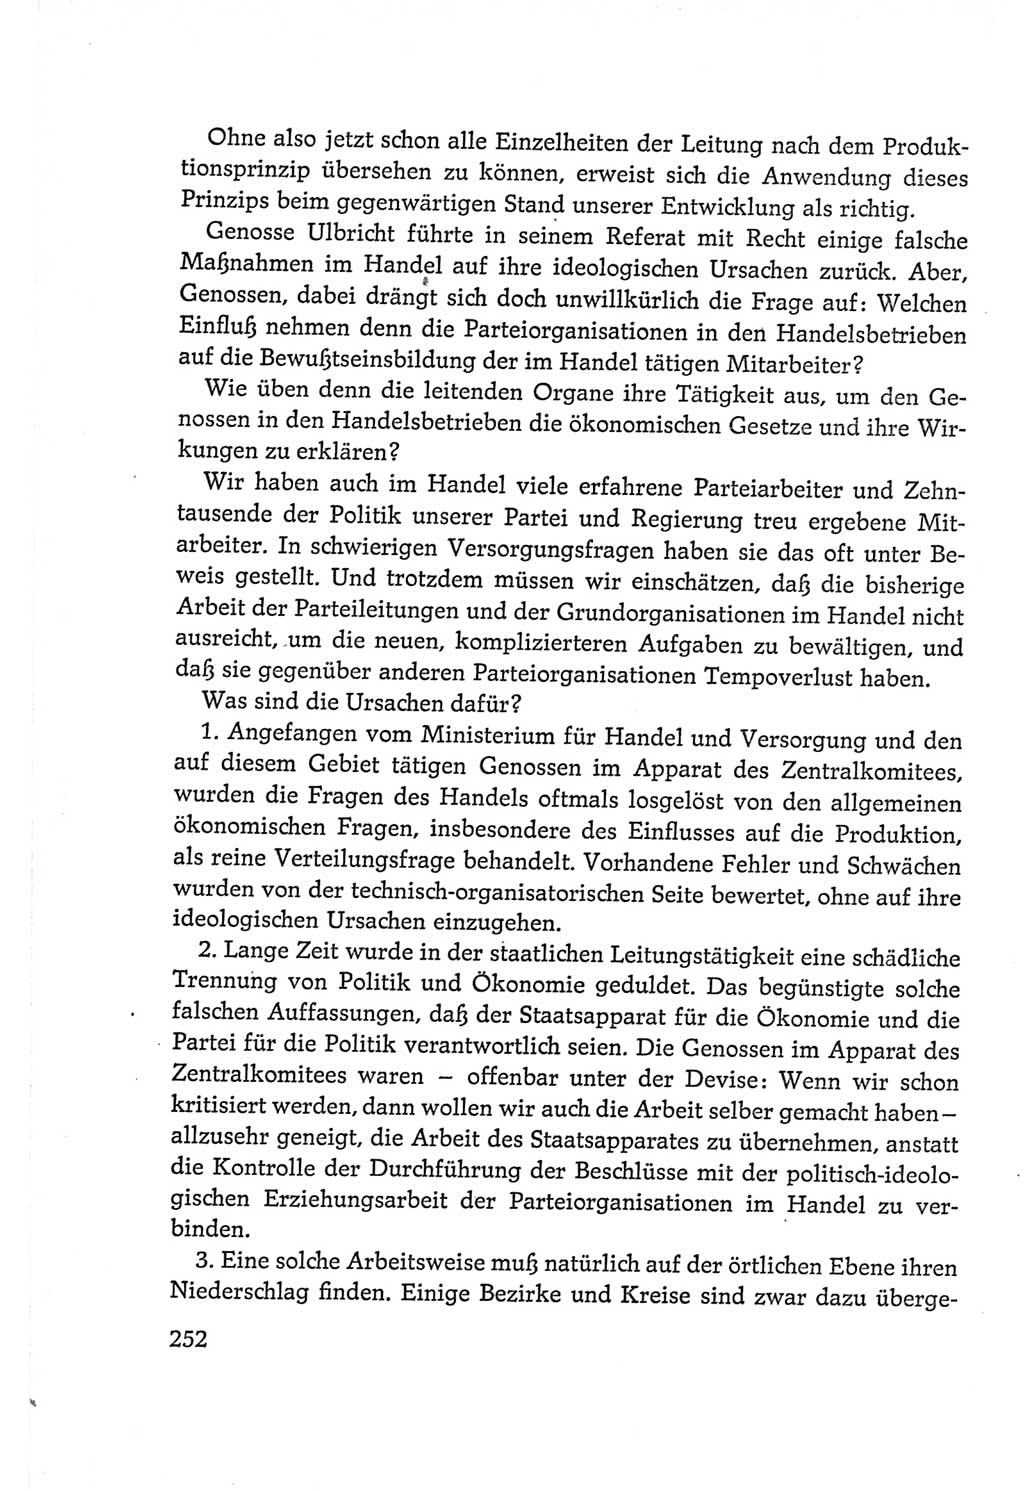 Protokoll der Verhandlungen des Ⅵ. Parteitages der Sozialistischen Einheitspartei Deutschlands (SED) [Deutsche Demokratische Republik (DDR)] 1963, Band Ⅱ, Seite 252 (Prot. Verh. Ⅵ. PT SED DDR 1963, Bd. Ⅱ, S. 252)